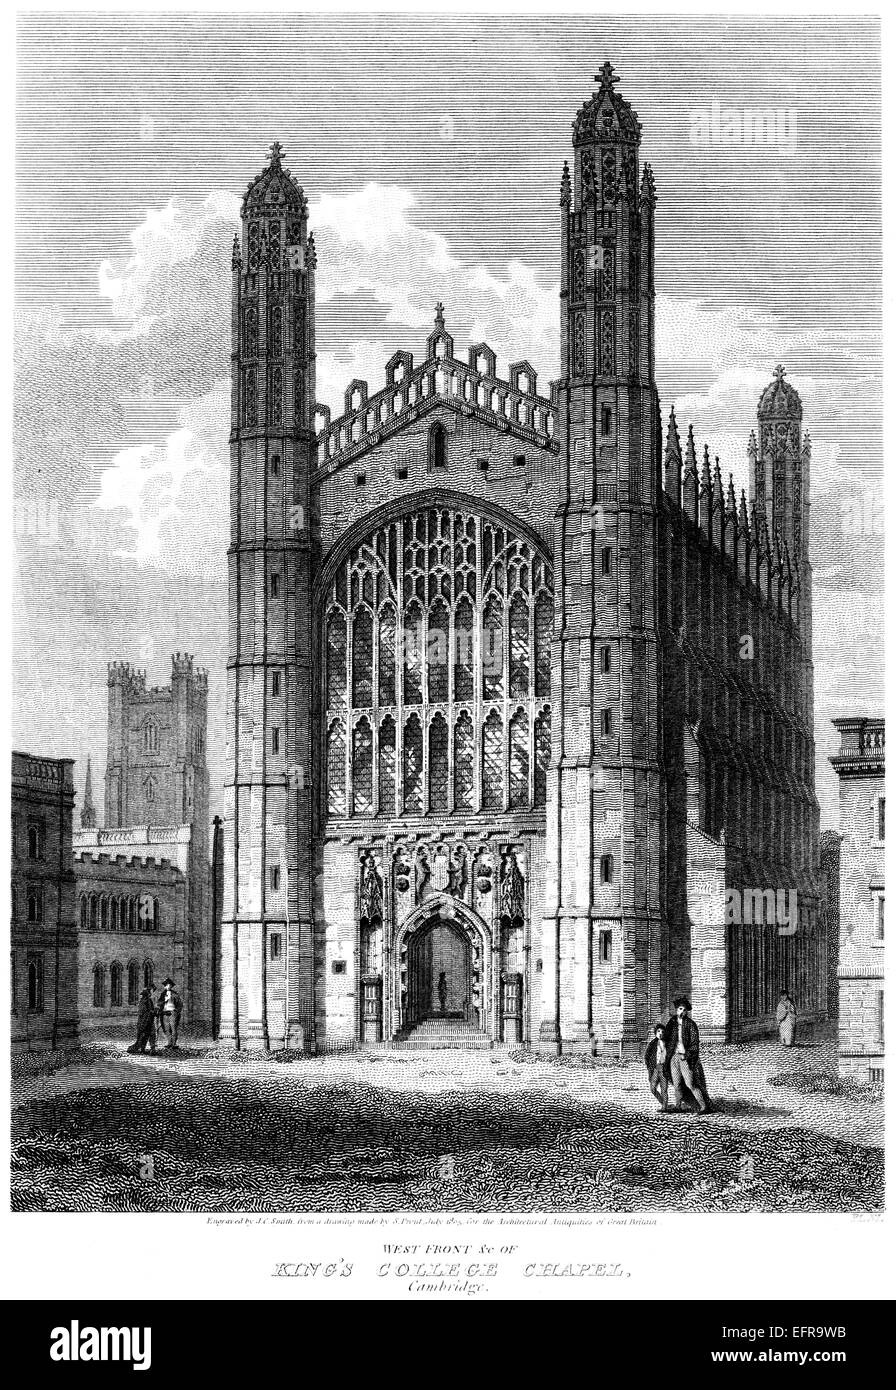 Eine Gravur der West Front des Kings College Chapel, Cambridge Scannen mit hoher Auflösung aus einer Publikation gedruckt im Jahre 1805. Stockfoto